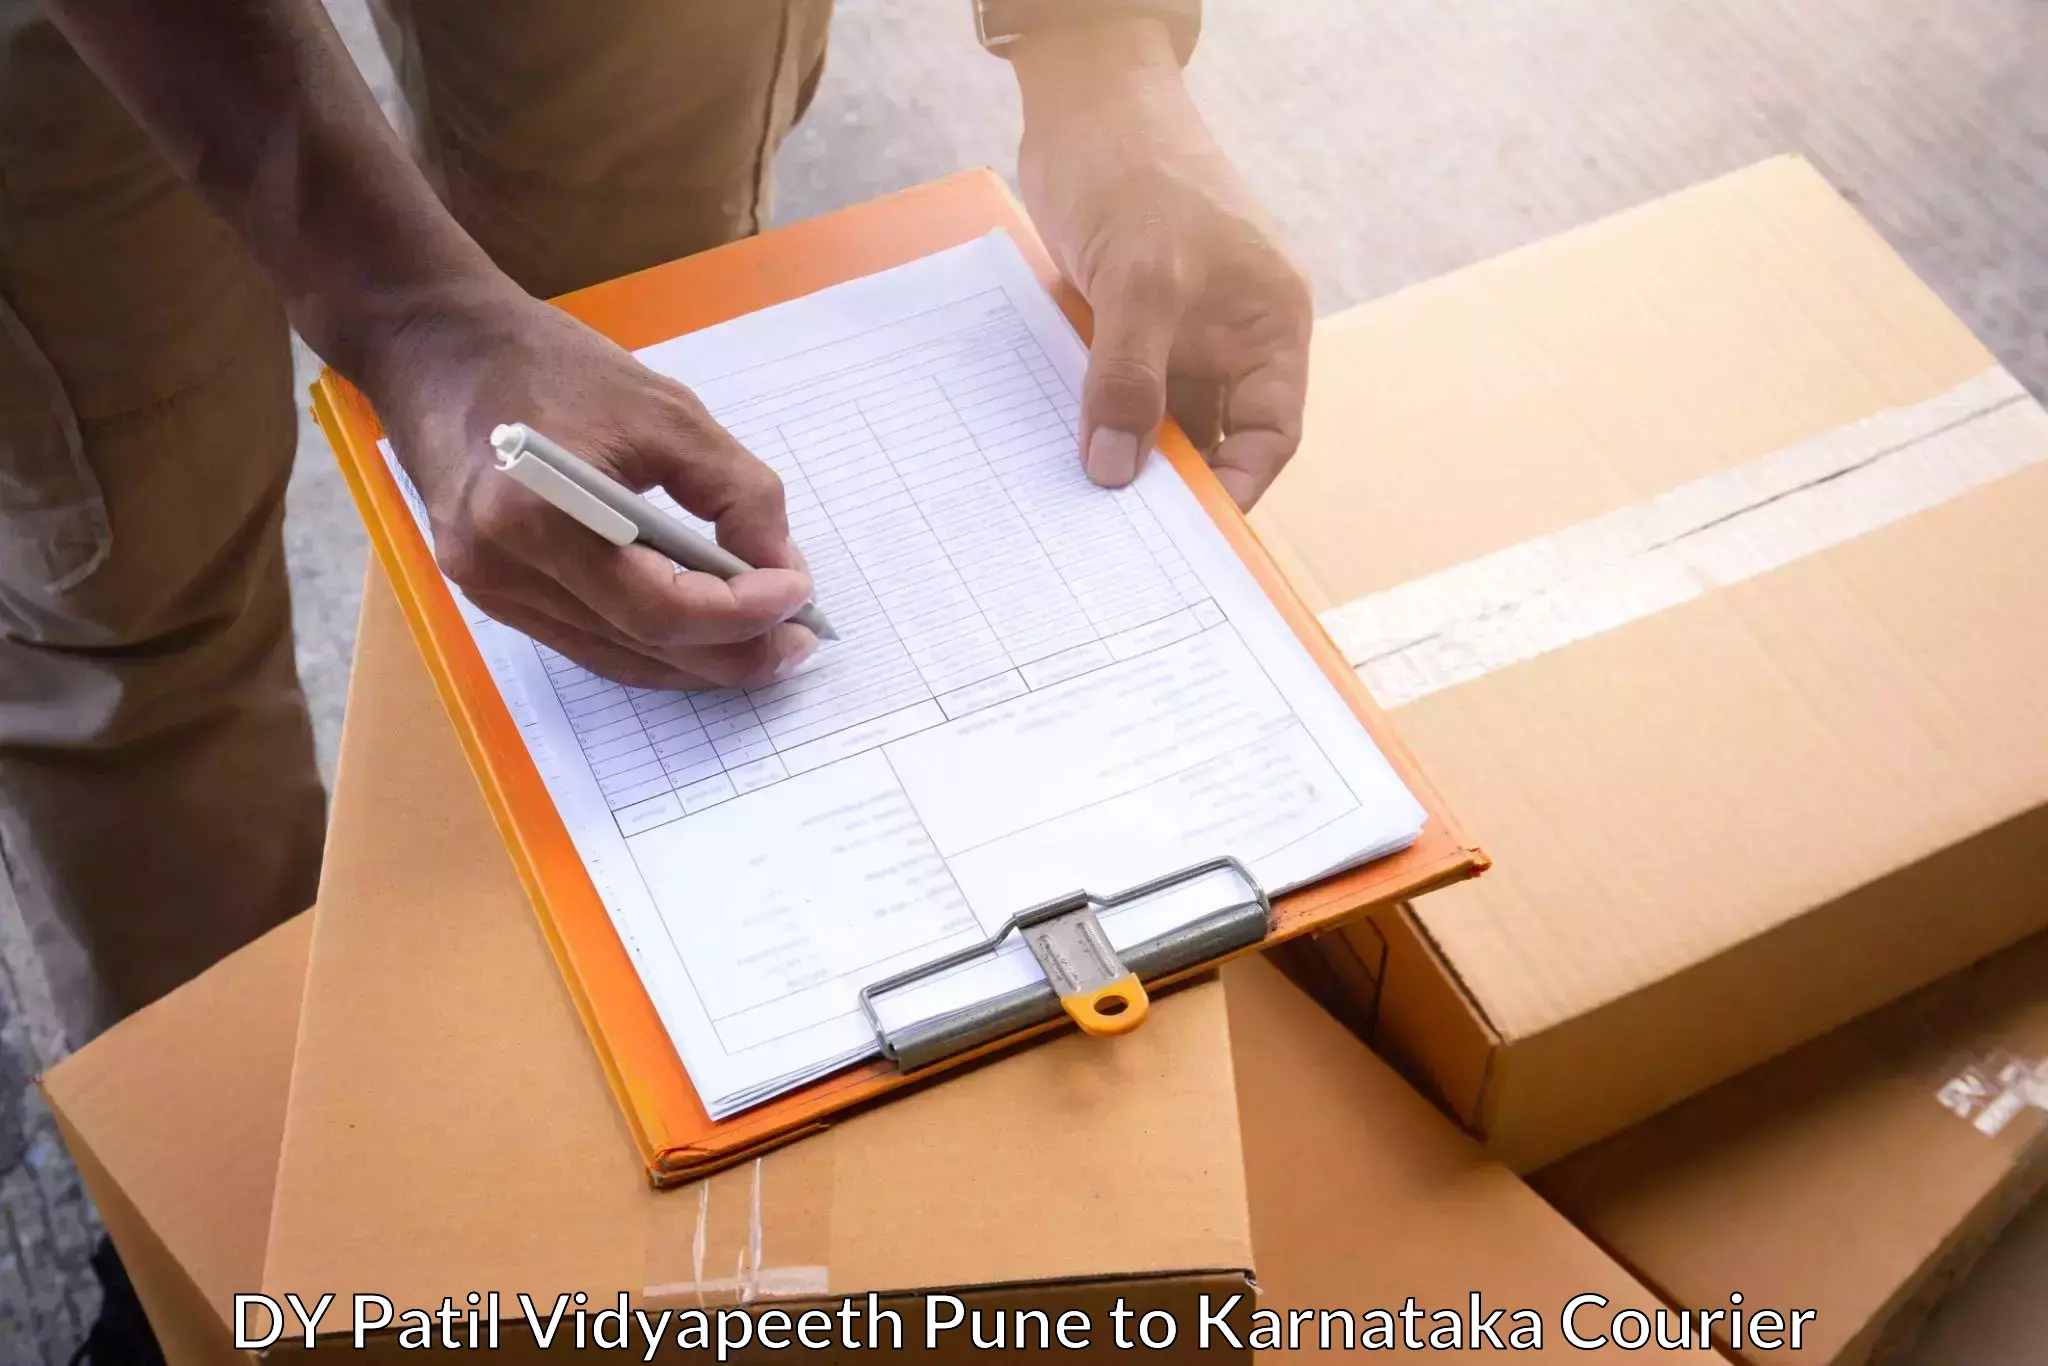 Business shipping needs DY Patil Vidyapeeth Pune to Karnataka